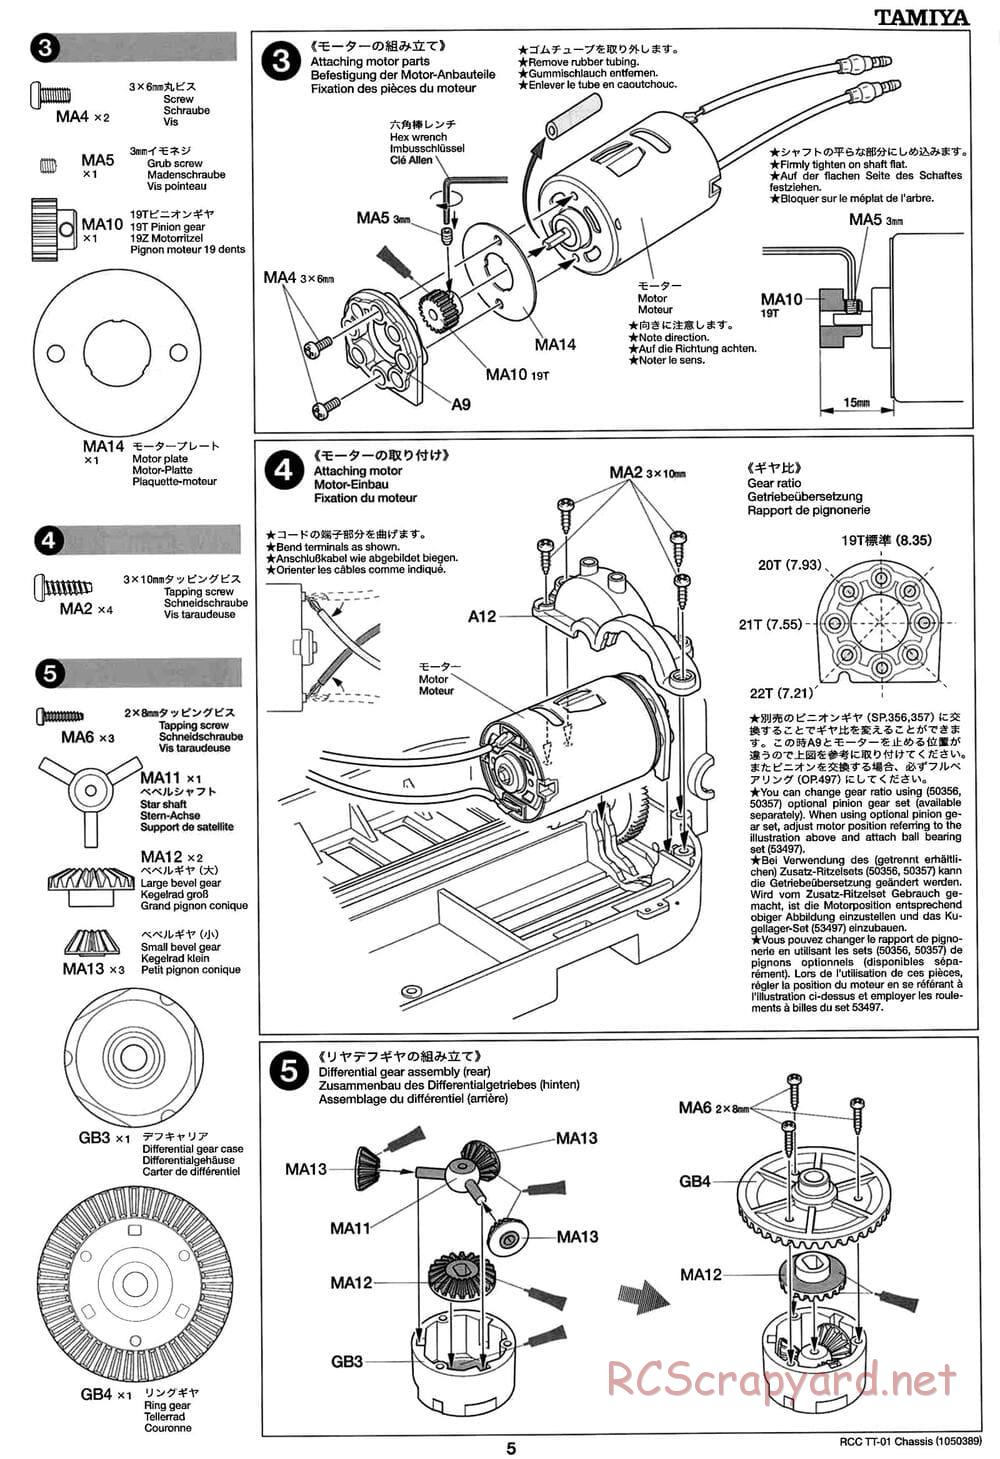 Tamiya - TT-01 Chassis - Manual - Page 5